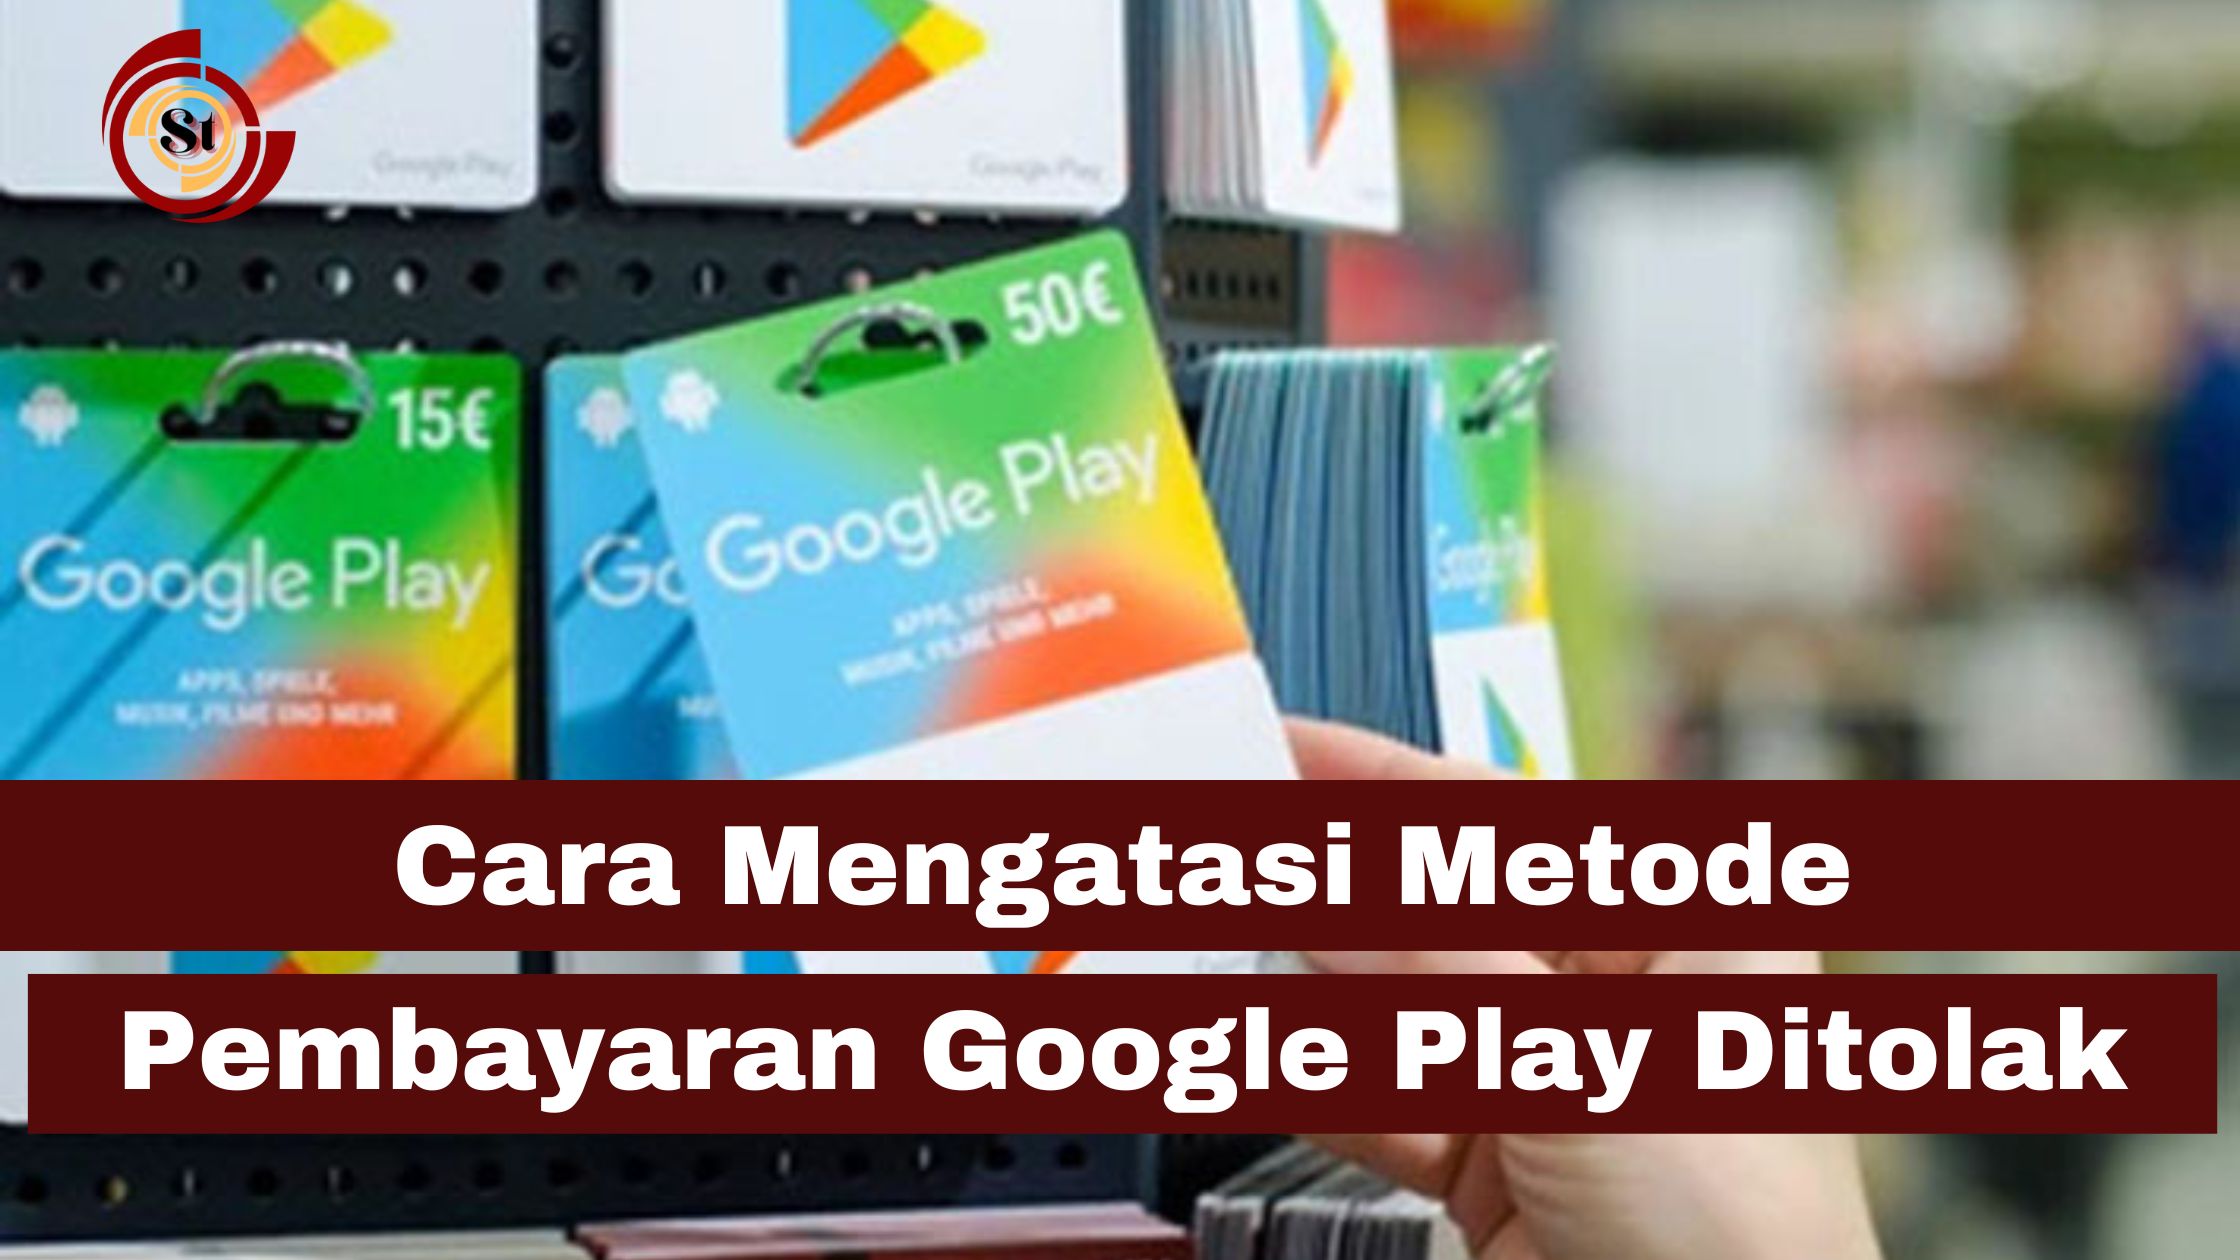 Cara Mengatasi Metode Pembayaran Google Play Ditolak